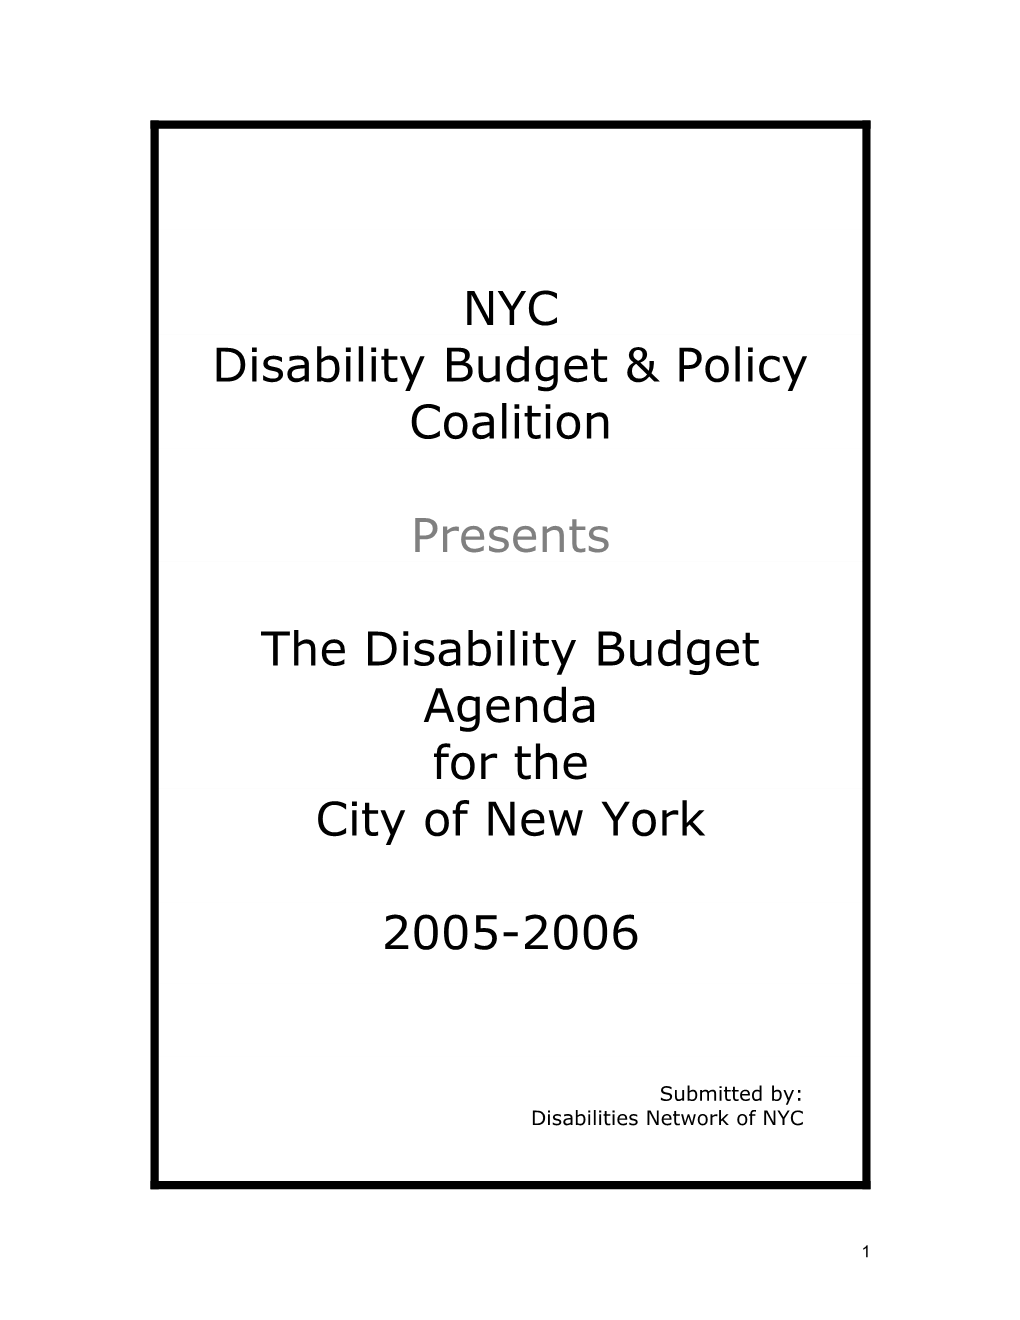 The Disability Budget Agenda